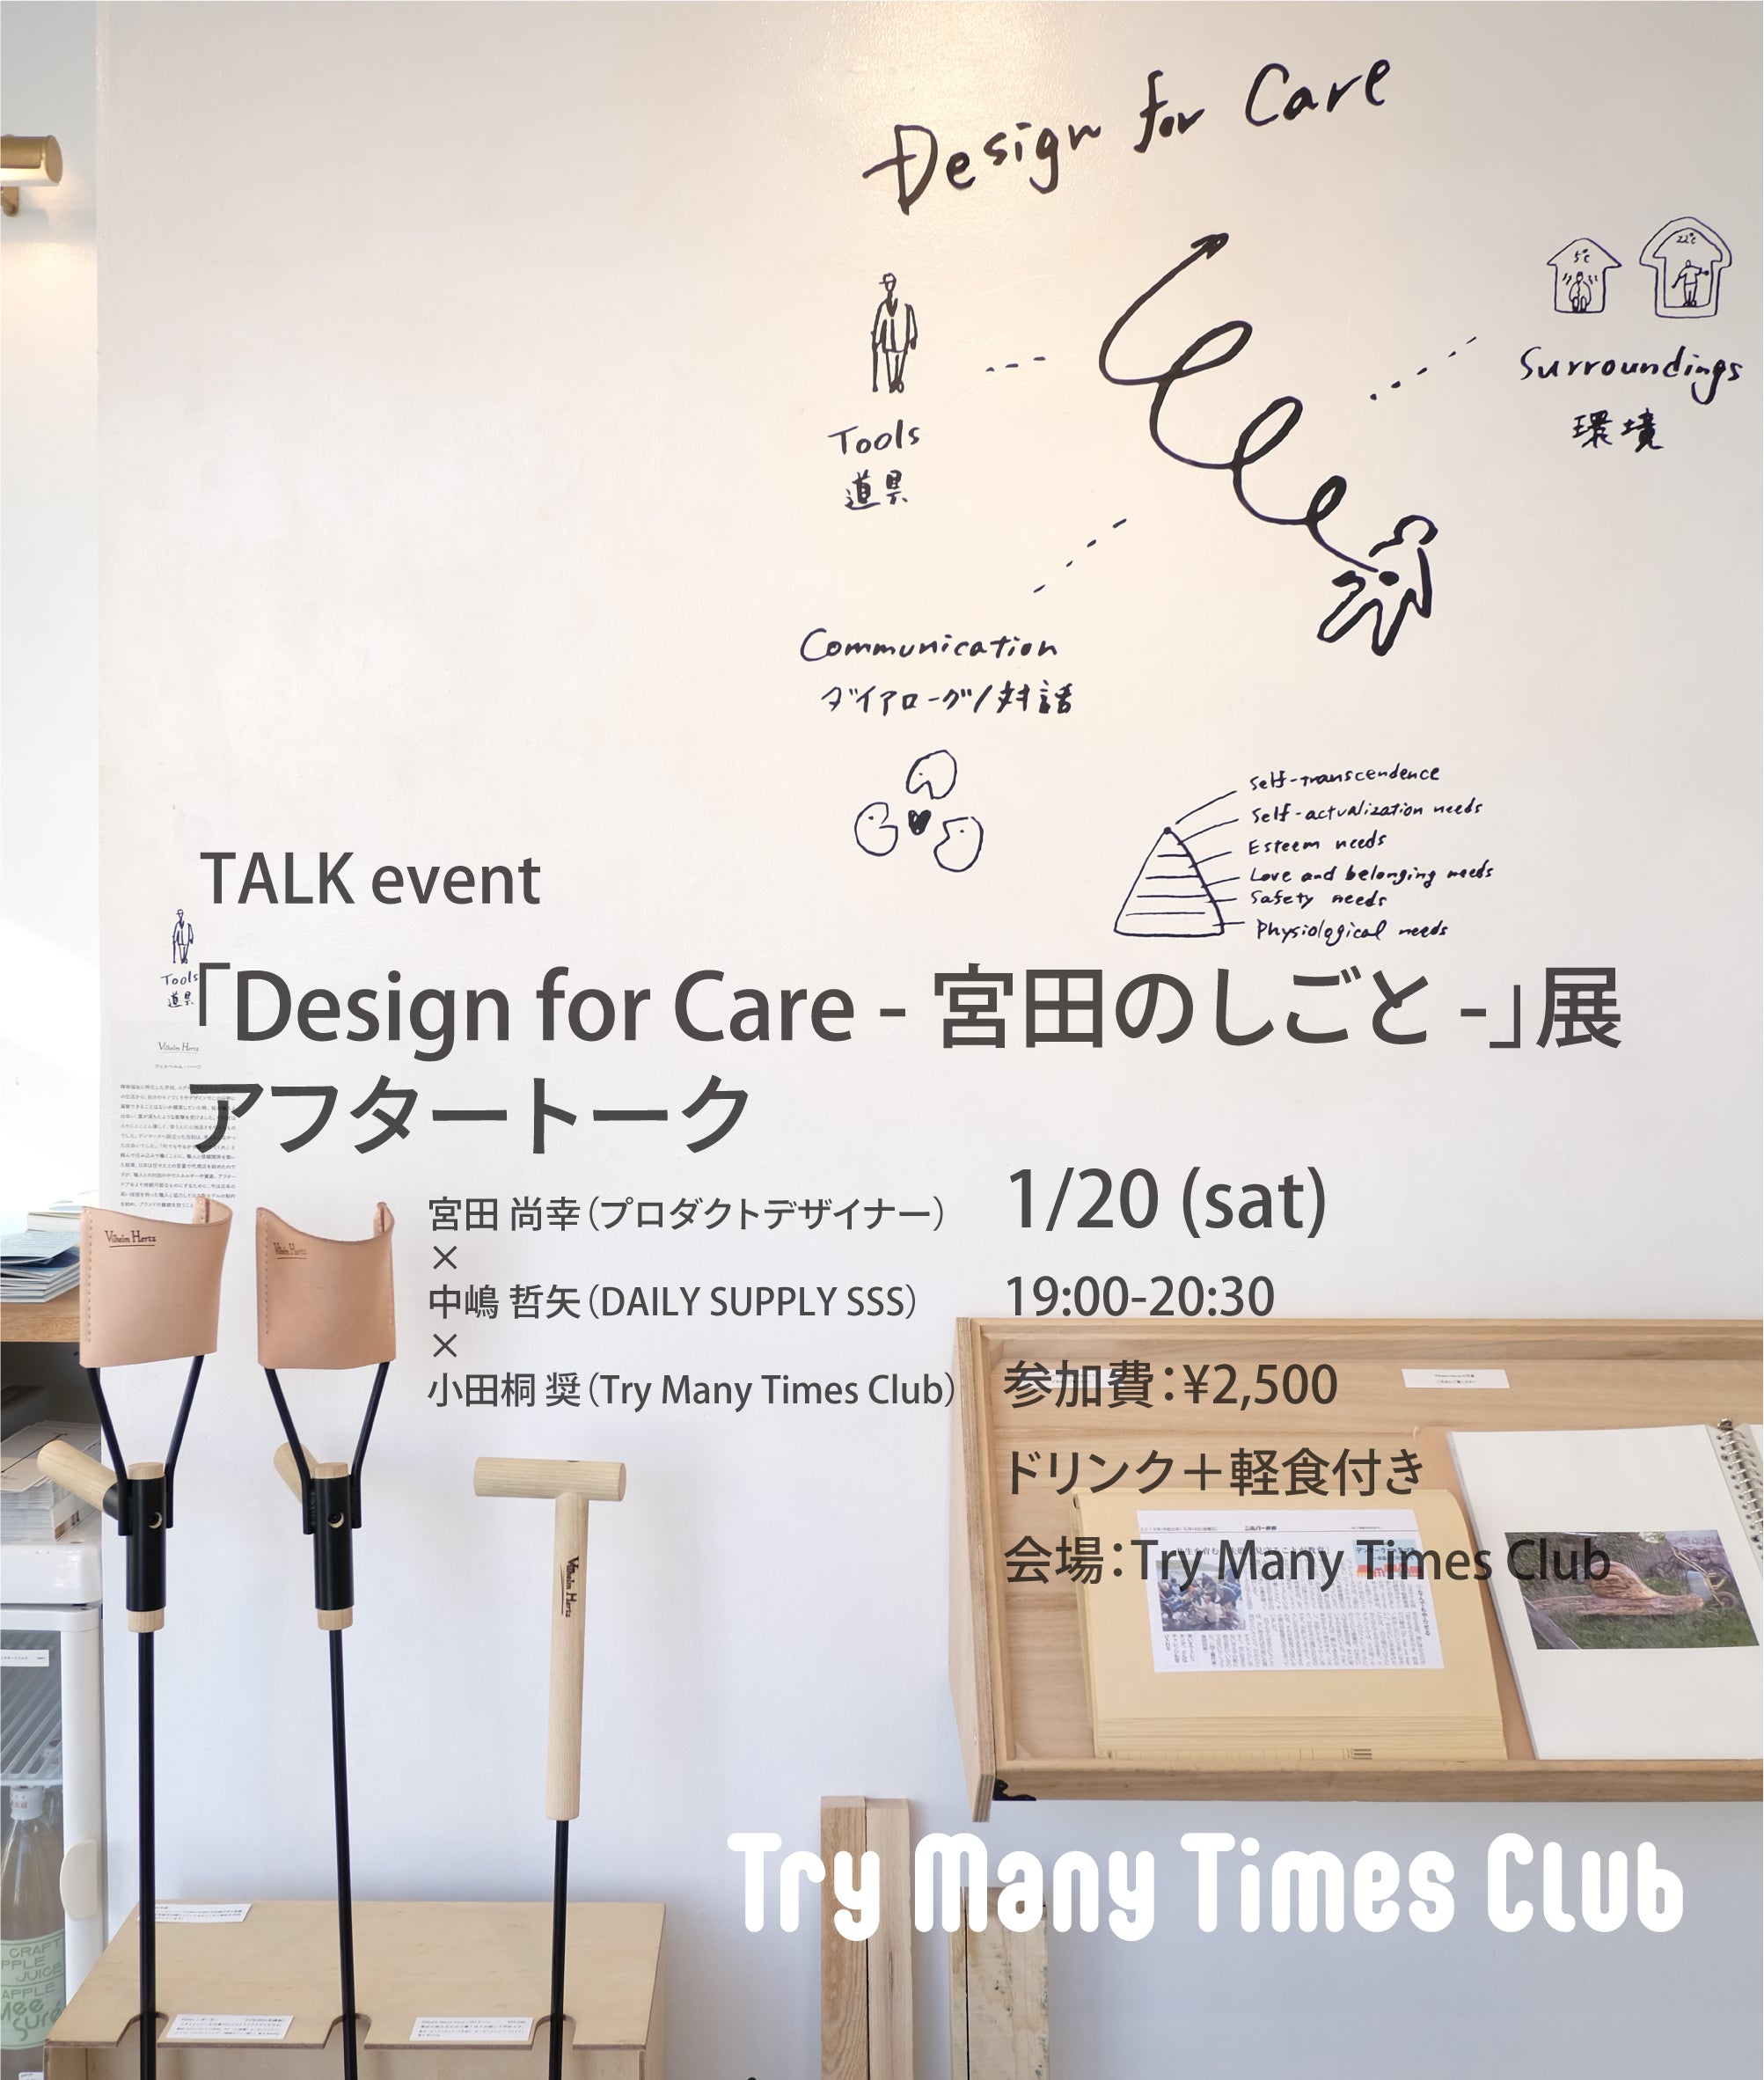 「Design for Care - 宮田のしごと -」展 　アフタートークイベント開催